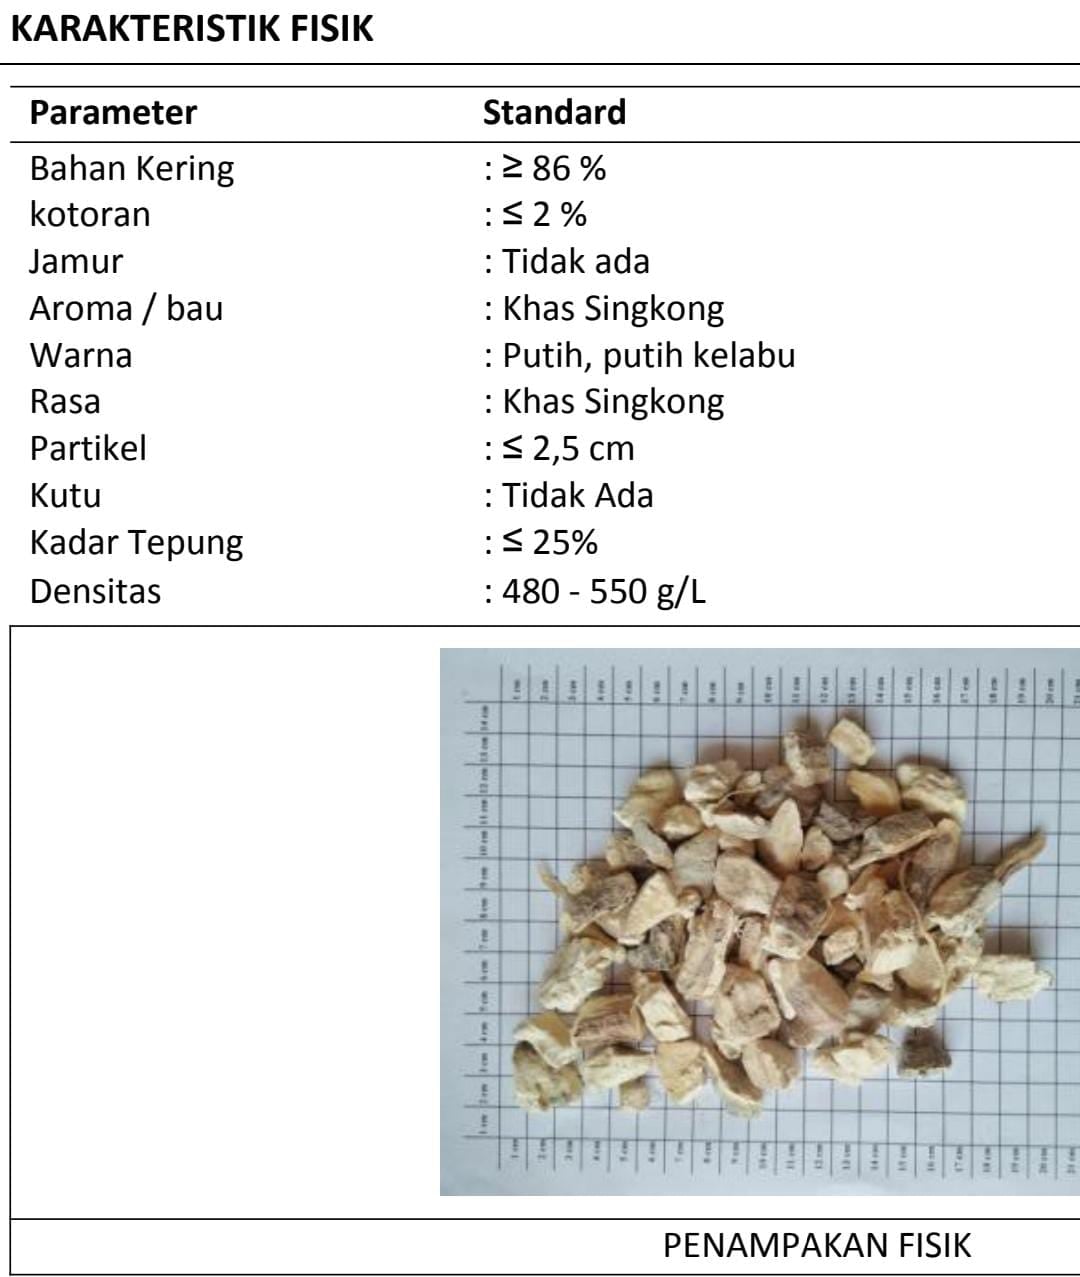 Đơn hàng xuất khẩu Khoai mì sấy khô sang thị trường Indonesia NS-KM01-16D22